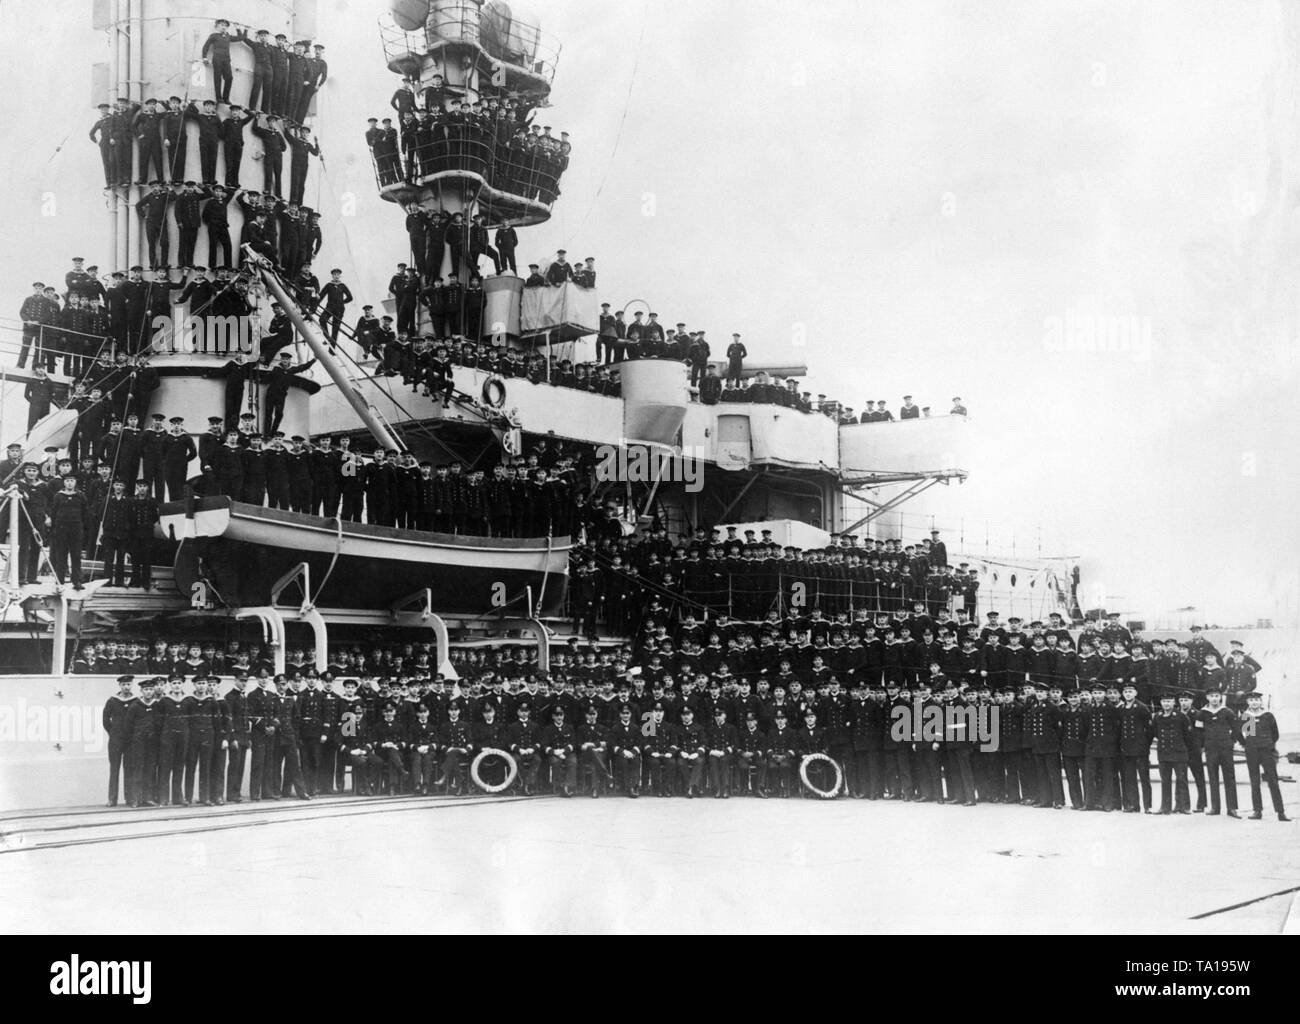 La imagen muestra la tripulación sobre y delante de la luz crucero "Emden", un barco de entrenamiento de la Reichsmarine. La imagen surgió antes de la partida de la 2ª gira mundial, que duró desde el 5.12.1928 al 3.12.1929. Para este viaje, la "Emden" había 66 oficiales a bordo como parte de la tripulación. Foto de stock